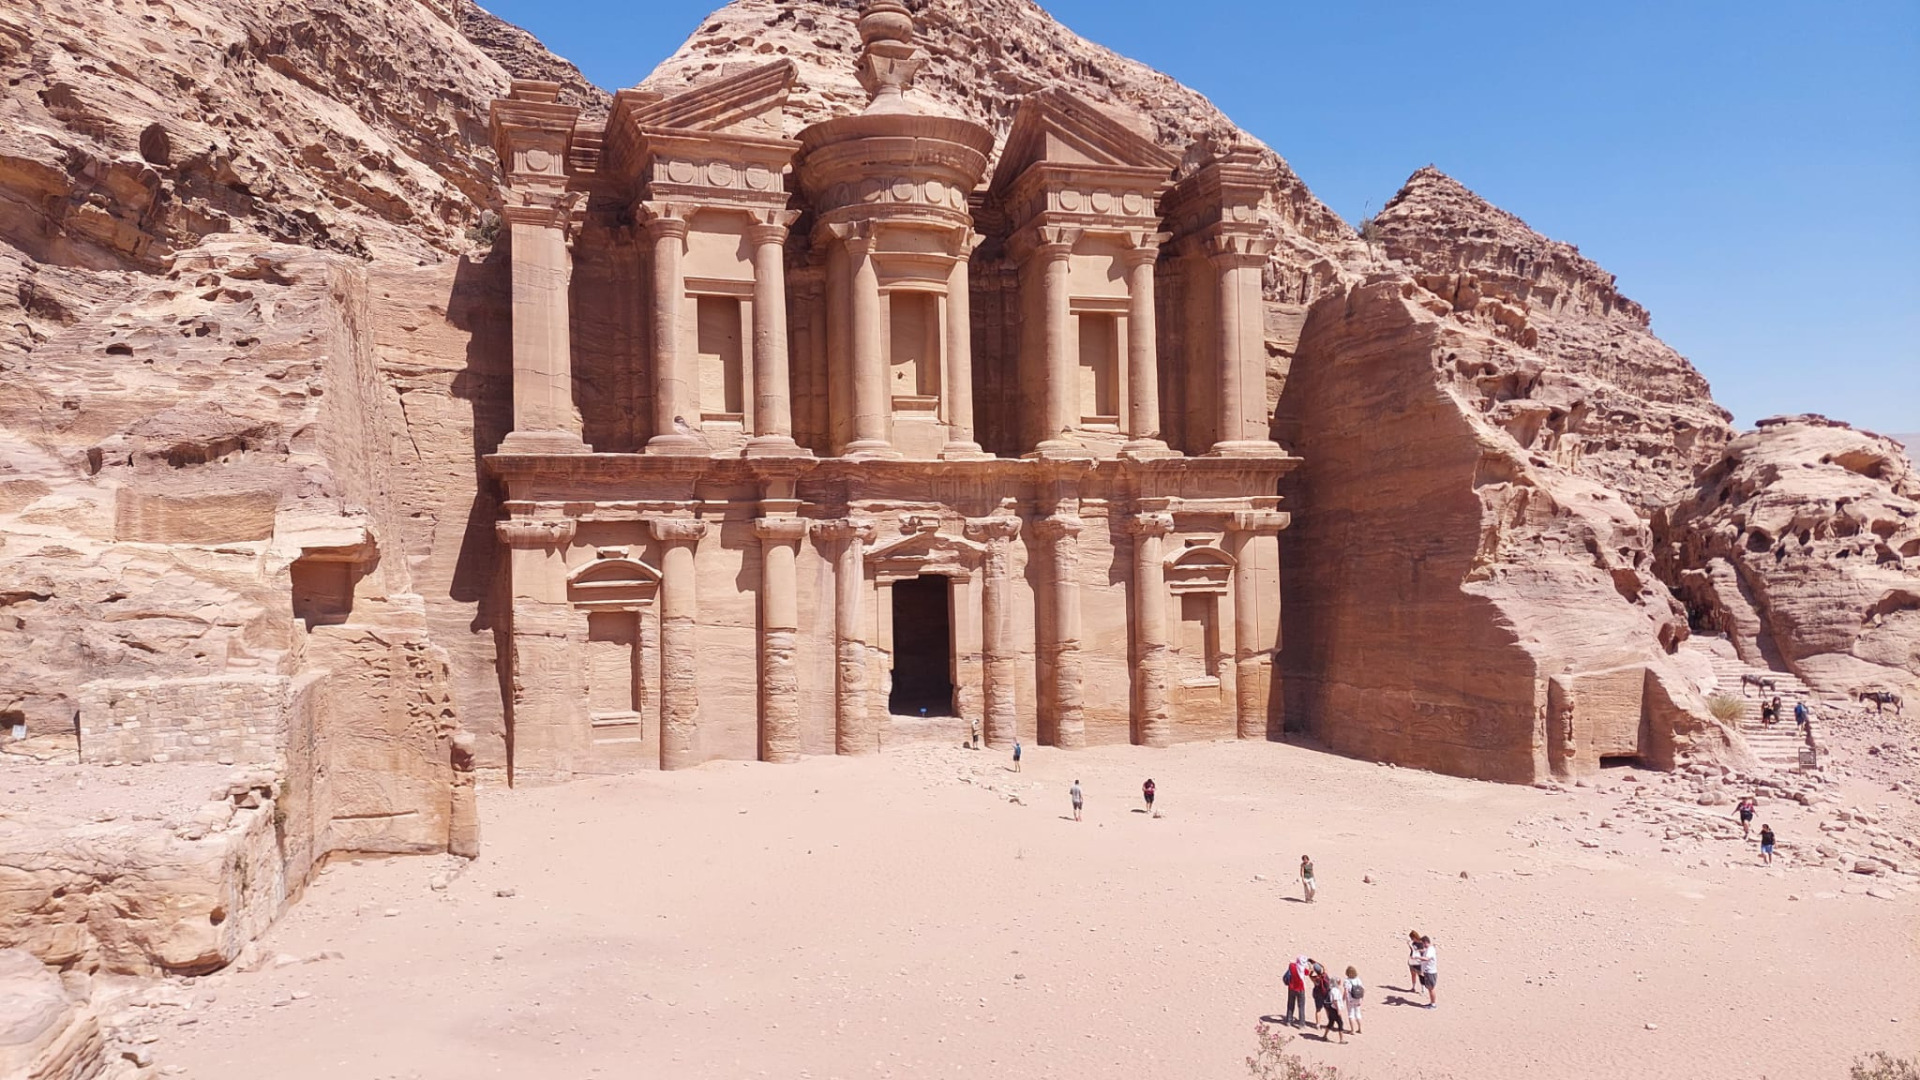 monastero, uno dei monumenti più belli della Giordania a Petra